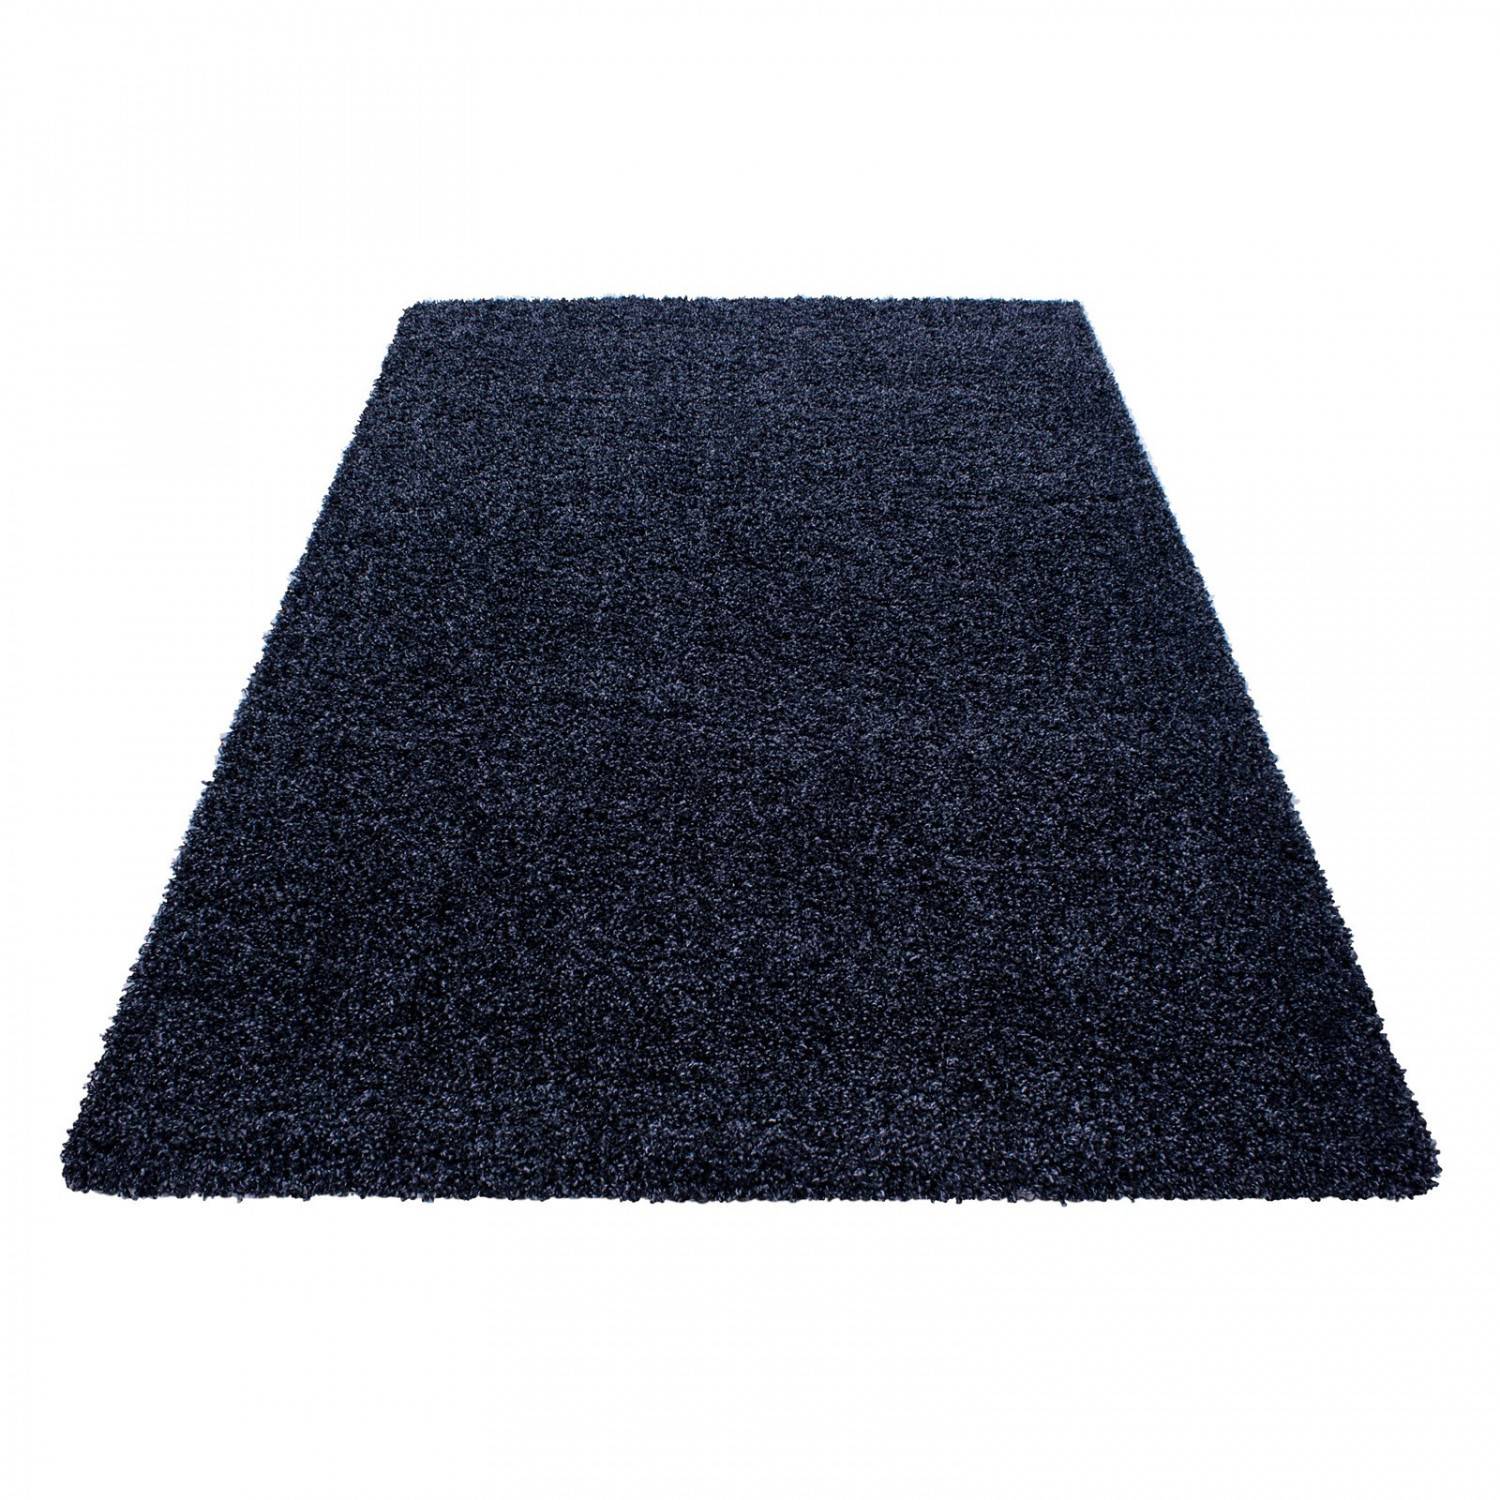 Rechthoekig tapijt Soros 140x200cm Stof donkerblauw